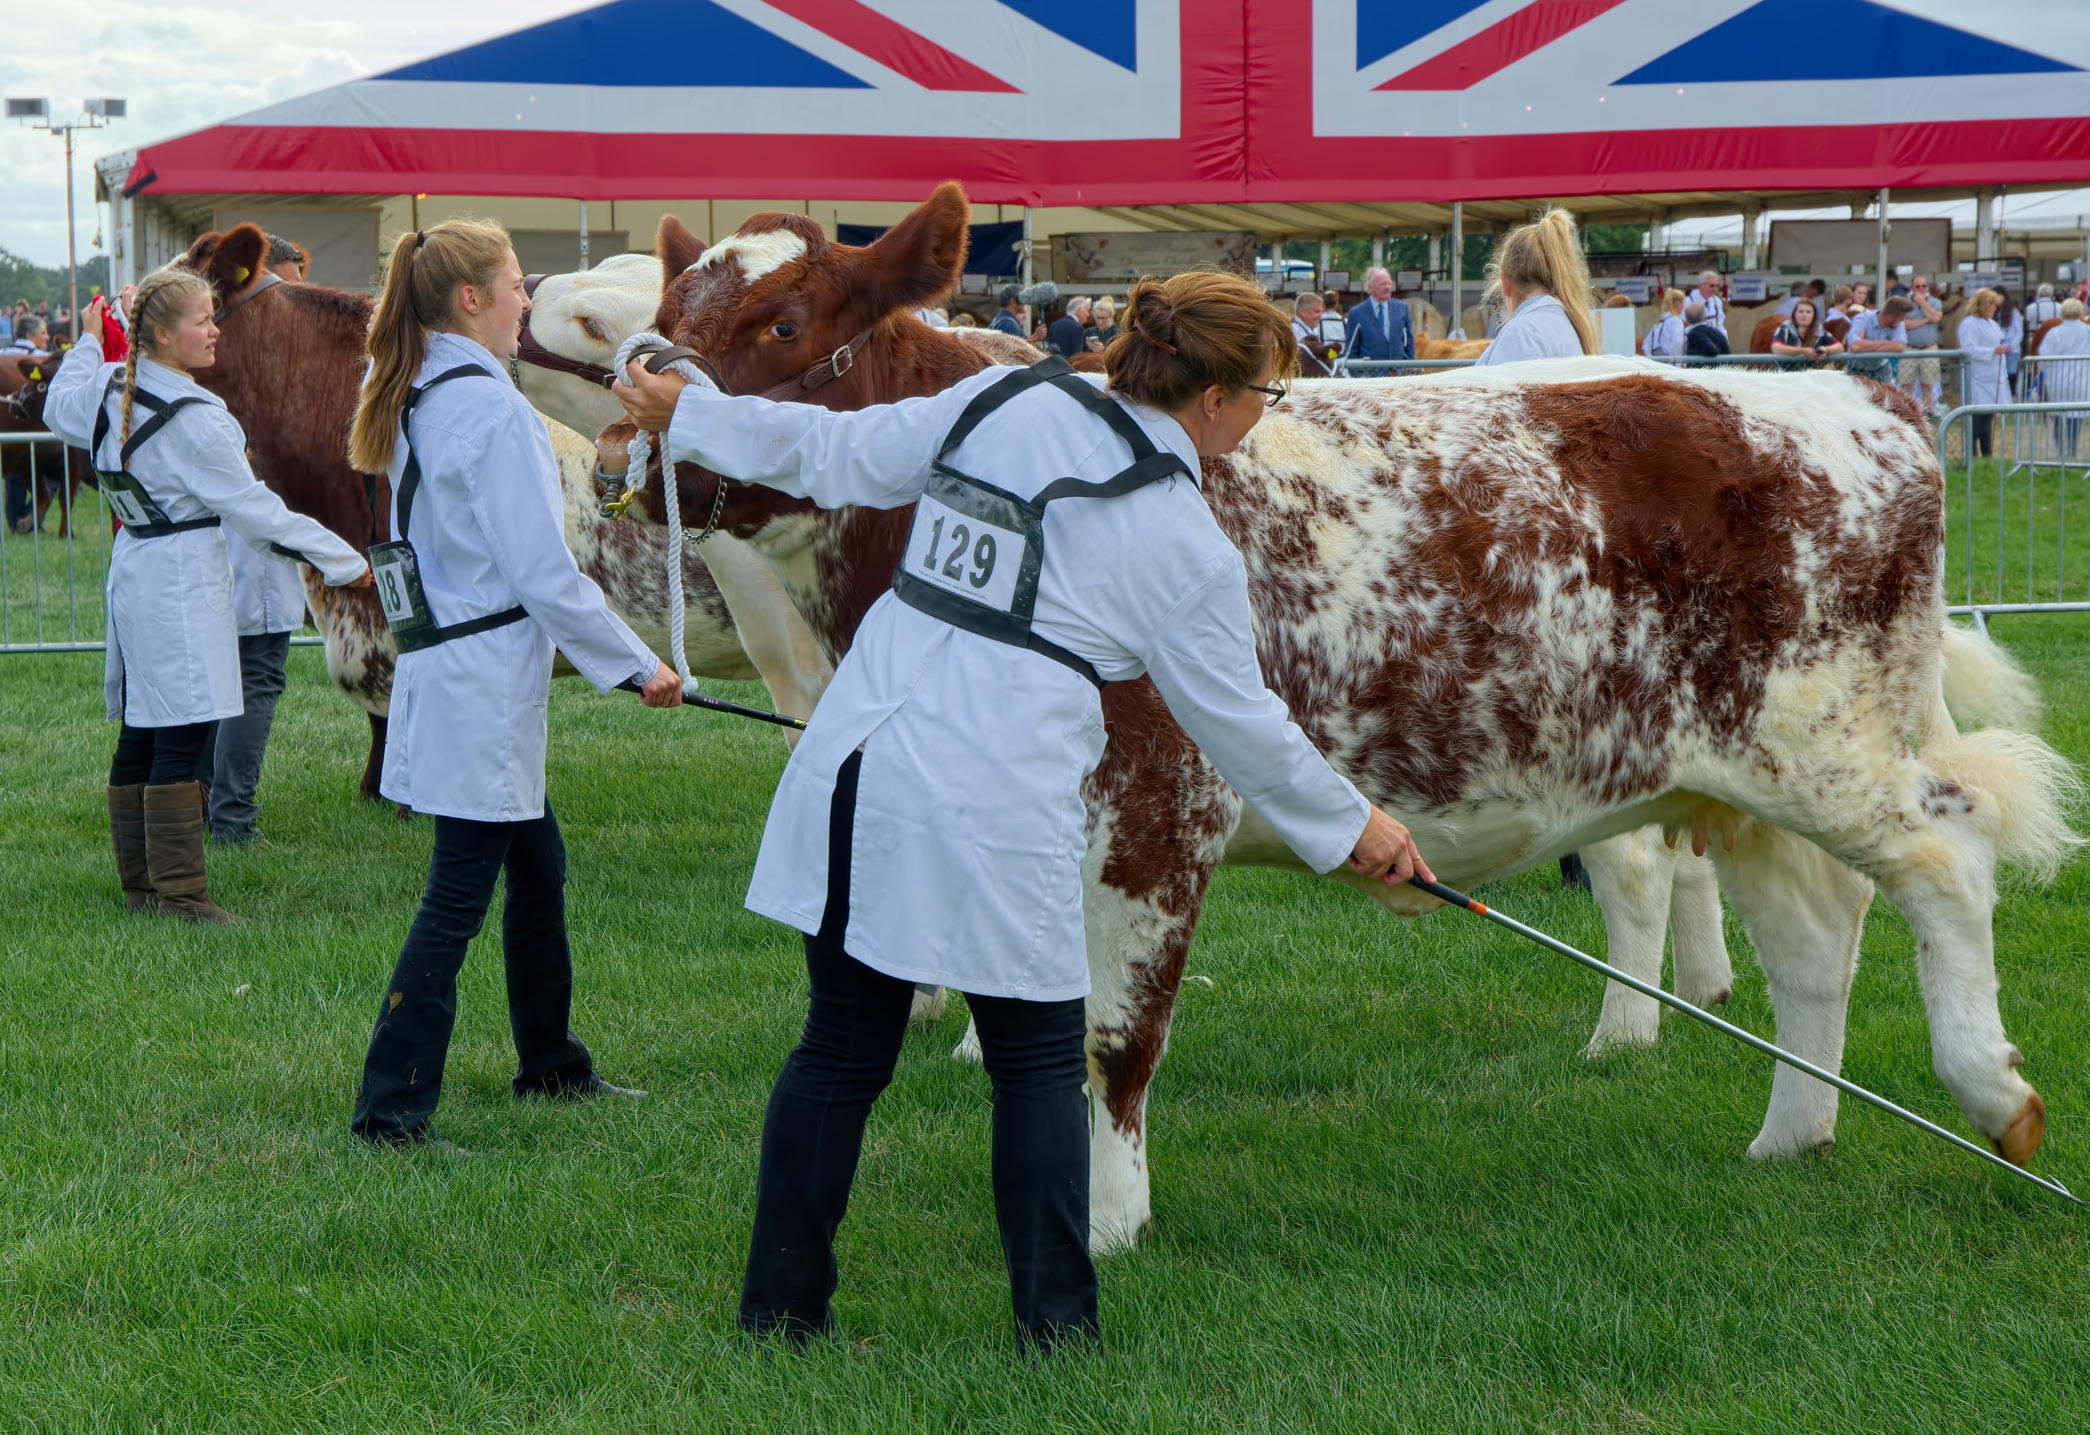 Un șir de vaci frumoase sunt pregătite de îngrijitorii lor în timp ce se pregătesc să fie jurizate la o expoziție agricolă organizată în Surrey, Marea Britanie. Sursă foto: Dreamstime